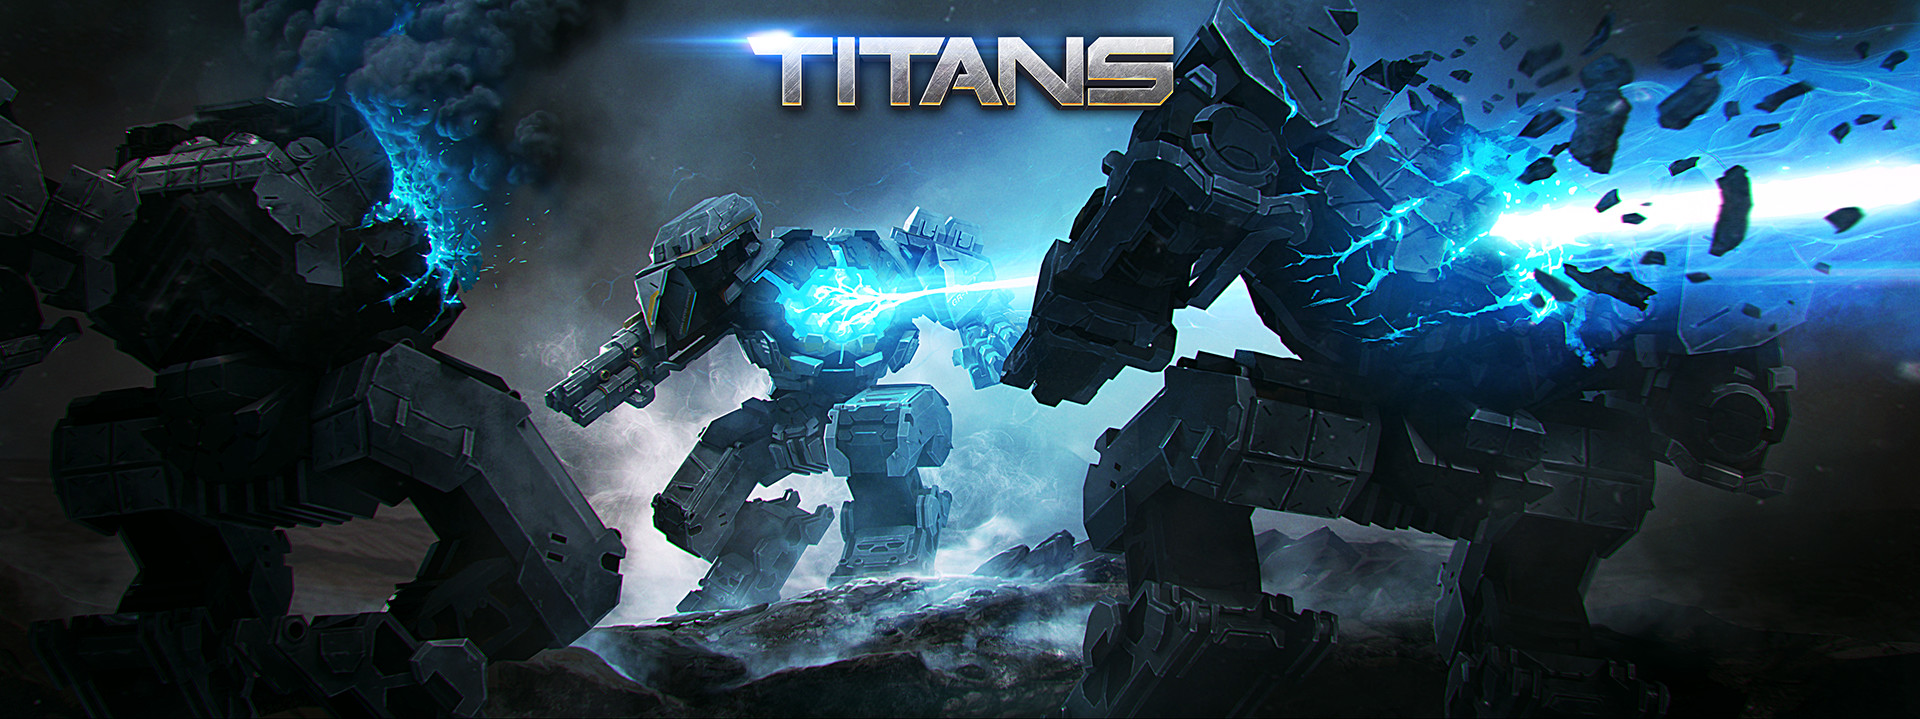 Лучшие игры титаны. Титаны игра Титан. Титаны игра про роботов. Роботы из игры Титаны. Титаны стратегия про роботов.